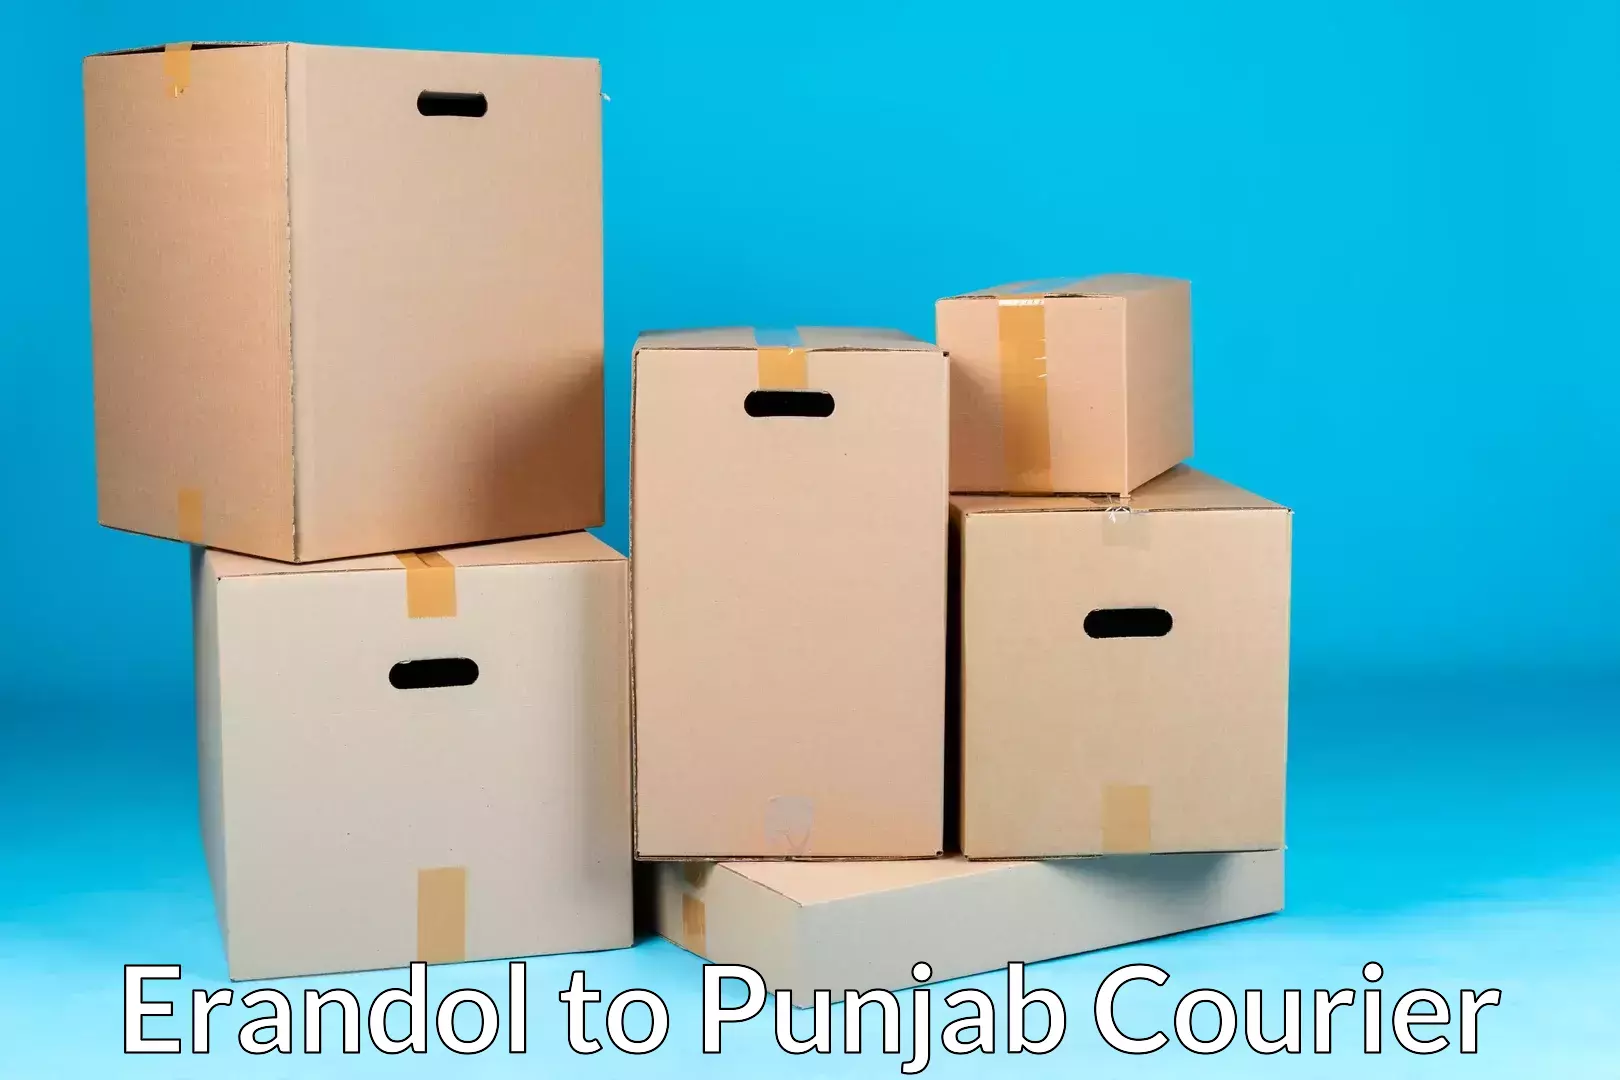 Home goods moving company Erandol to Punjab